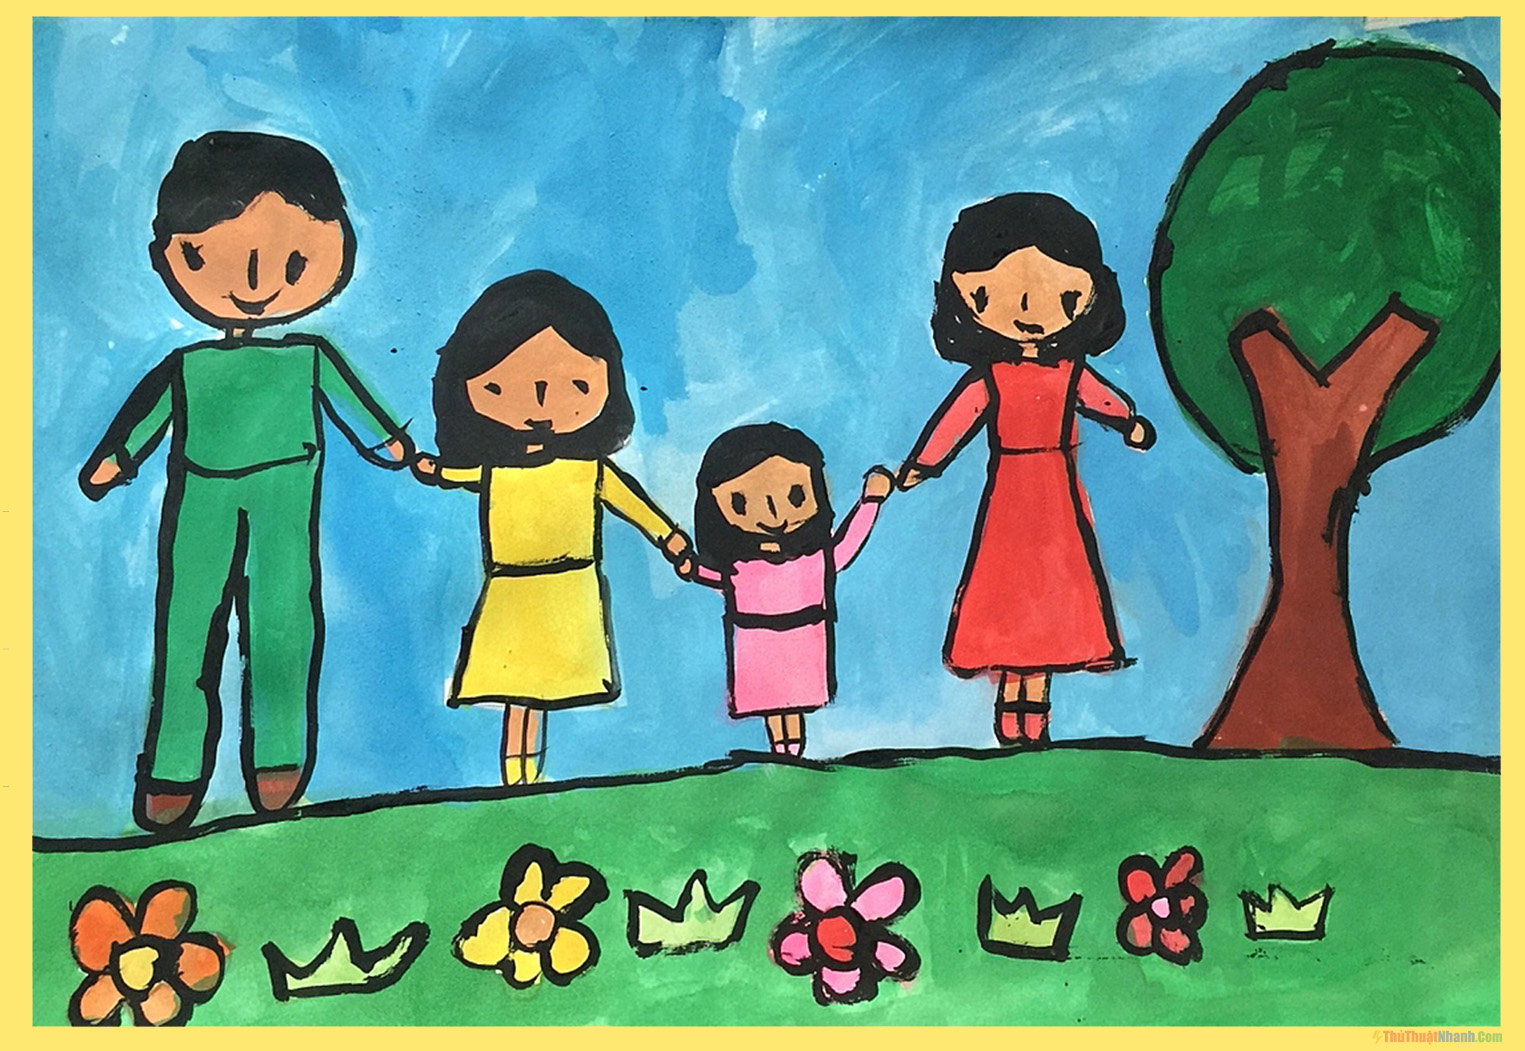 Vẽ tranh đề tài gia đình  Vẽ gia đình của em  How to draw family  YouTube